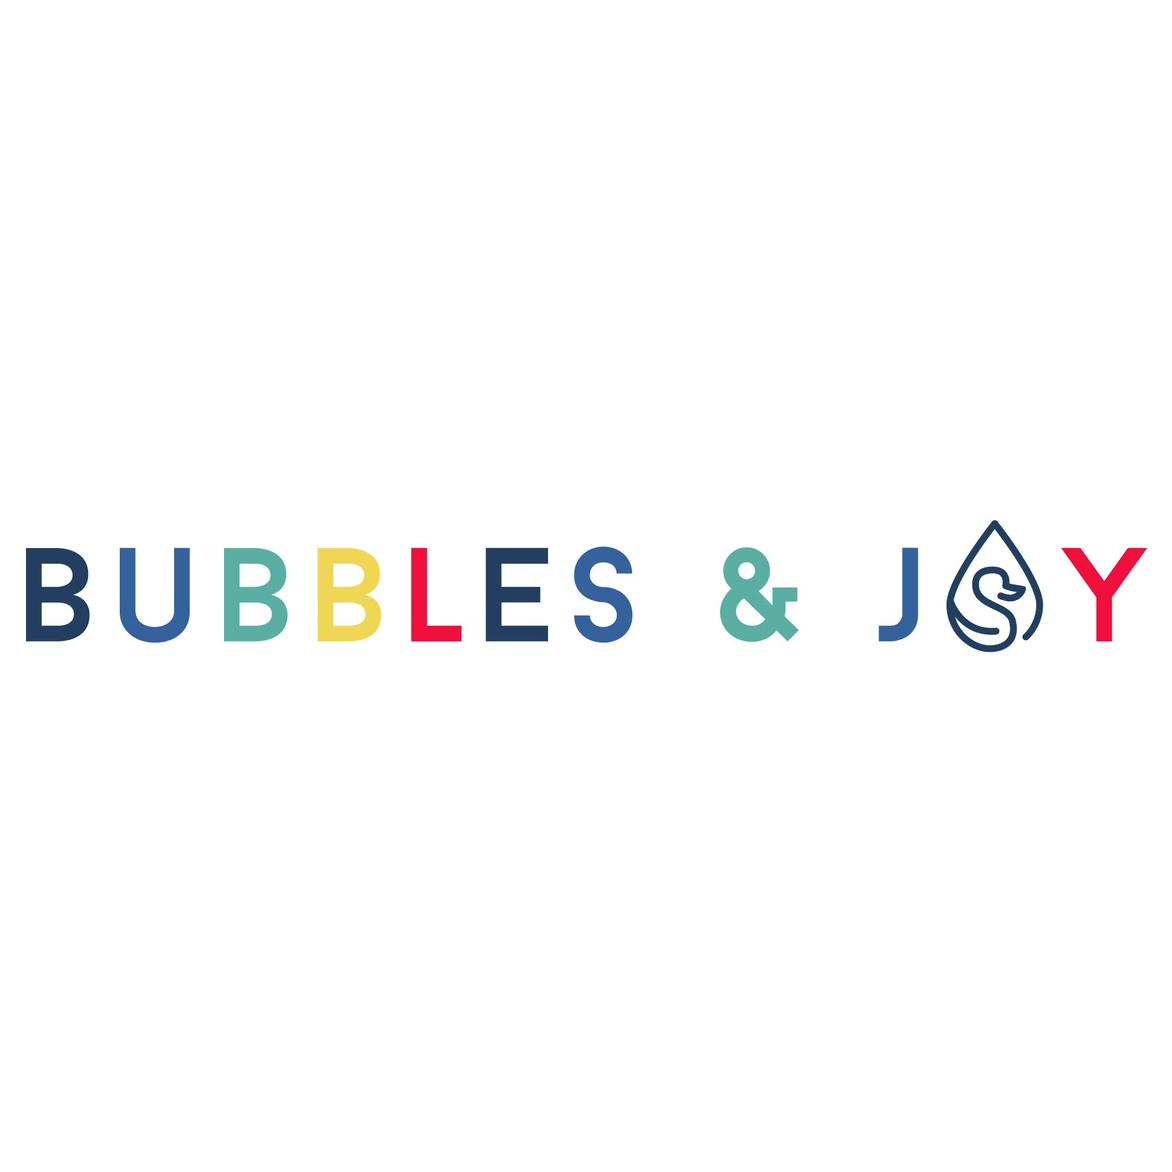 Bubbles&Joy's images